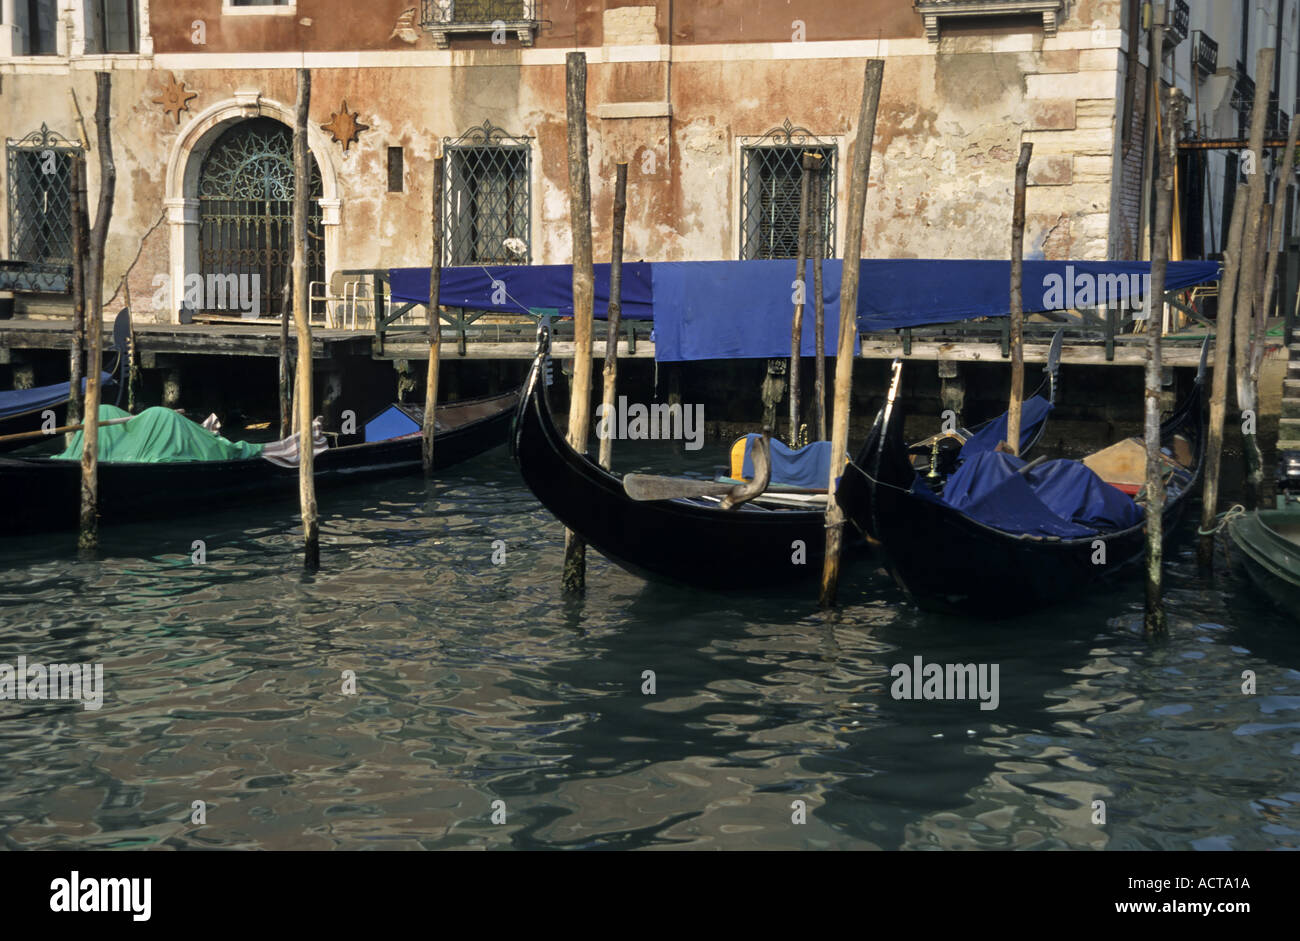 Las góndolas de Venecia Italia asientos vacíos flotando sobre el estrecho canal Foto de stock